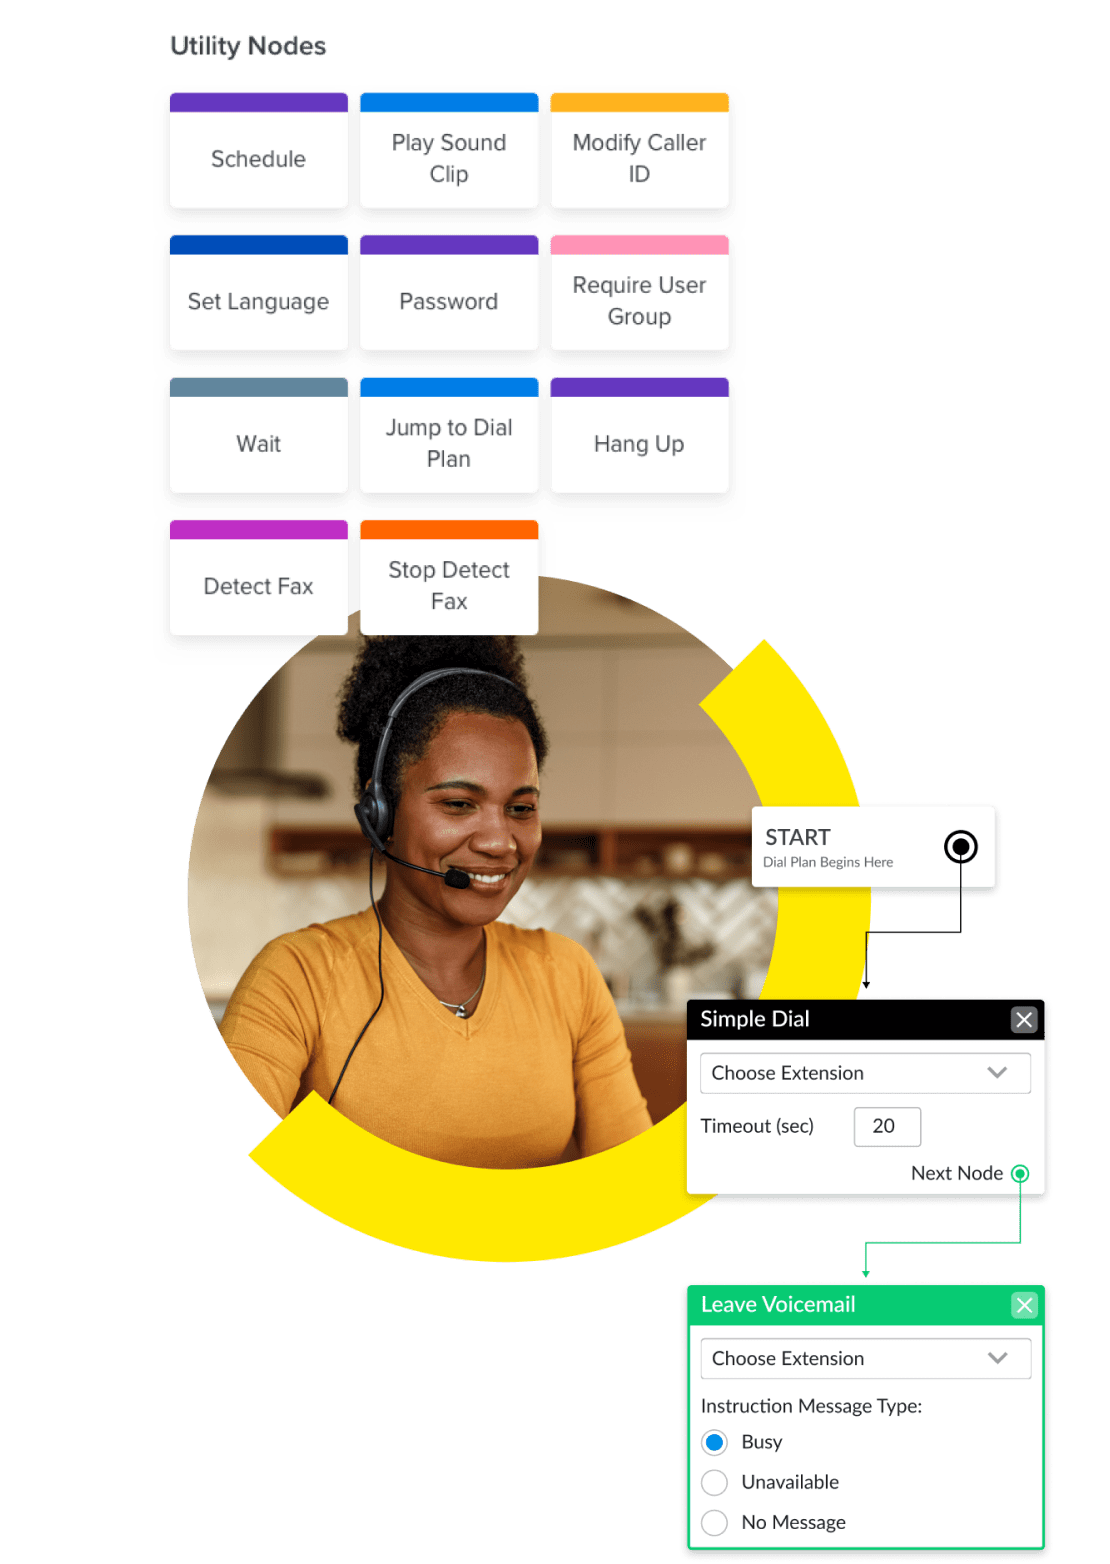 Collage de l’interface d’administration de GoTo Connect montrant l’éditeur visuel de plans d’appel et les options de mise en attente, de messagerie vocale, de répondeur vocal automatique, de planification et de numérotation simplifiée.